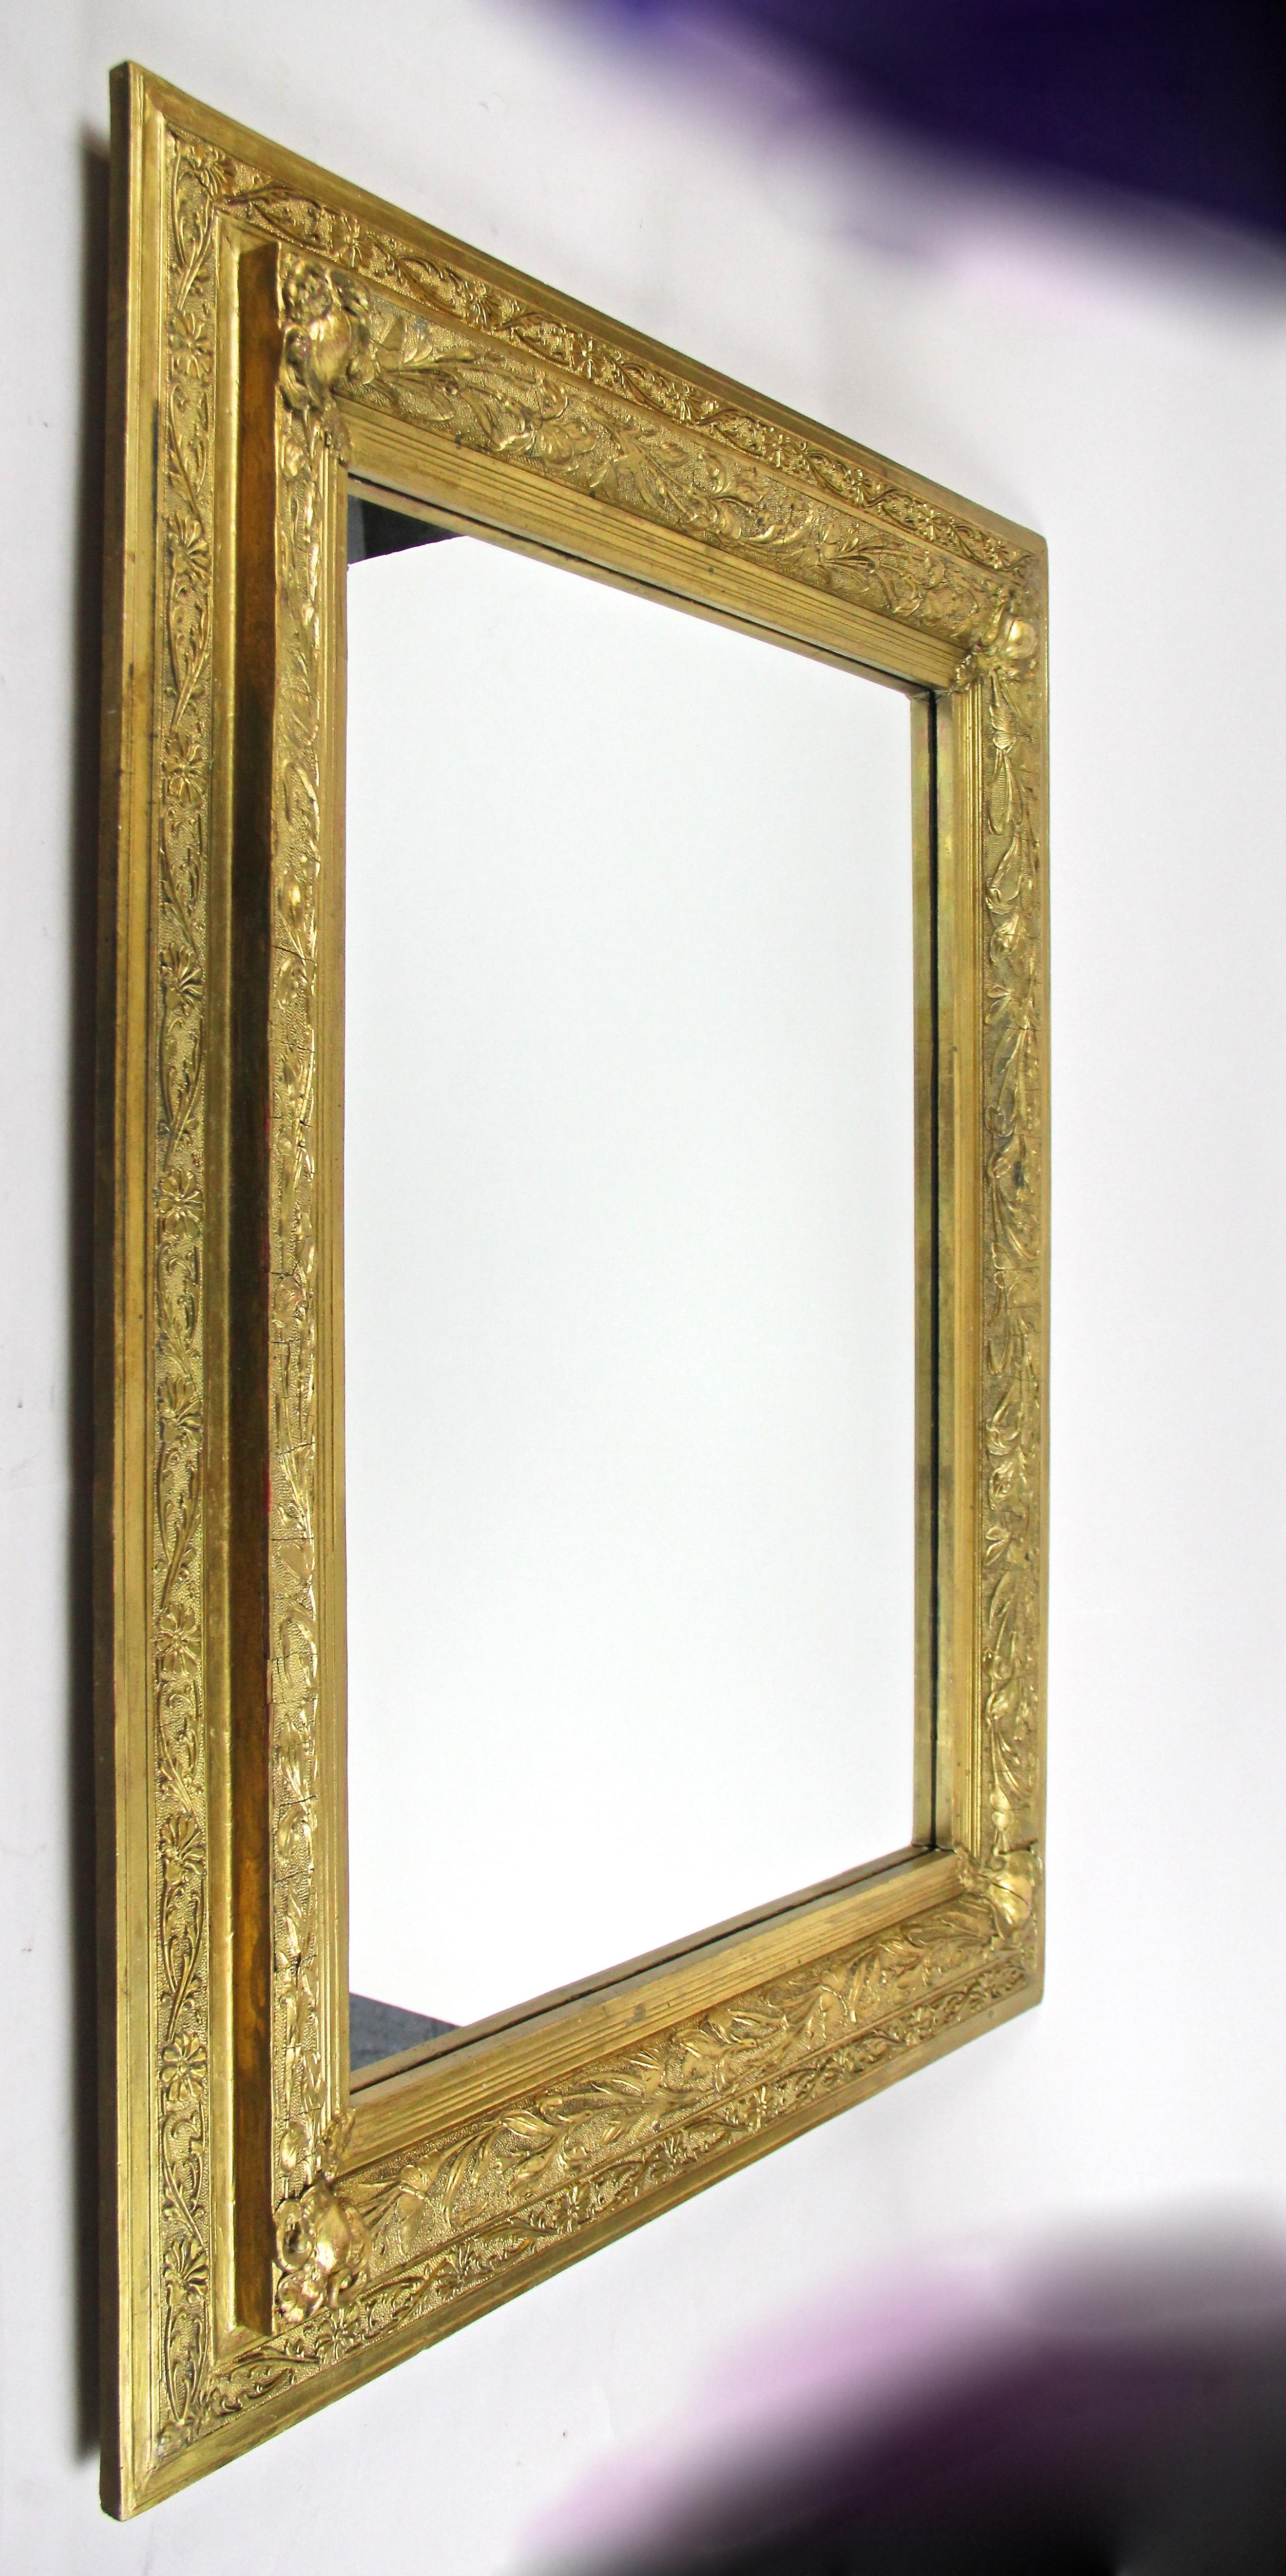 Superbe miroir mural Art Nouveau doré provenant de France et datant du début du 20e siècle, vers 1900. Ce grand miroir doré français impressionne par son large cadre orné d'éléments floraux et de jolis papillons, très typiques de cette célèbre